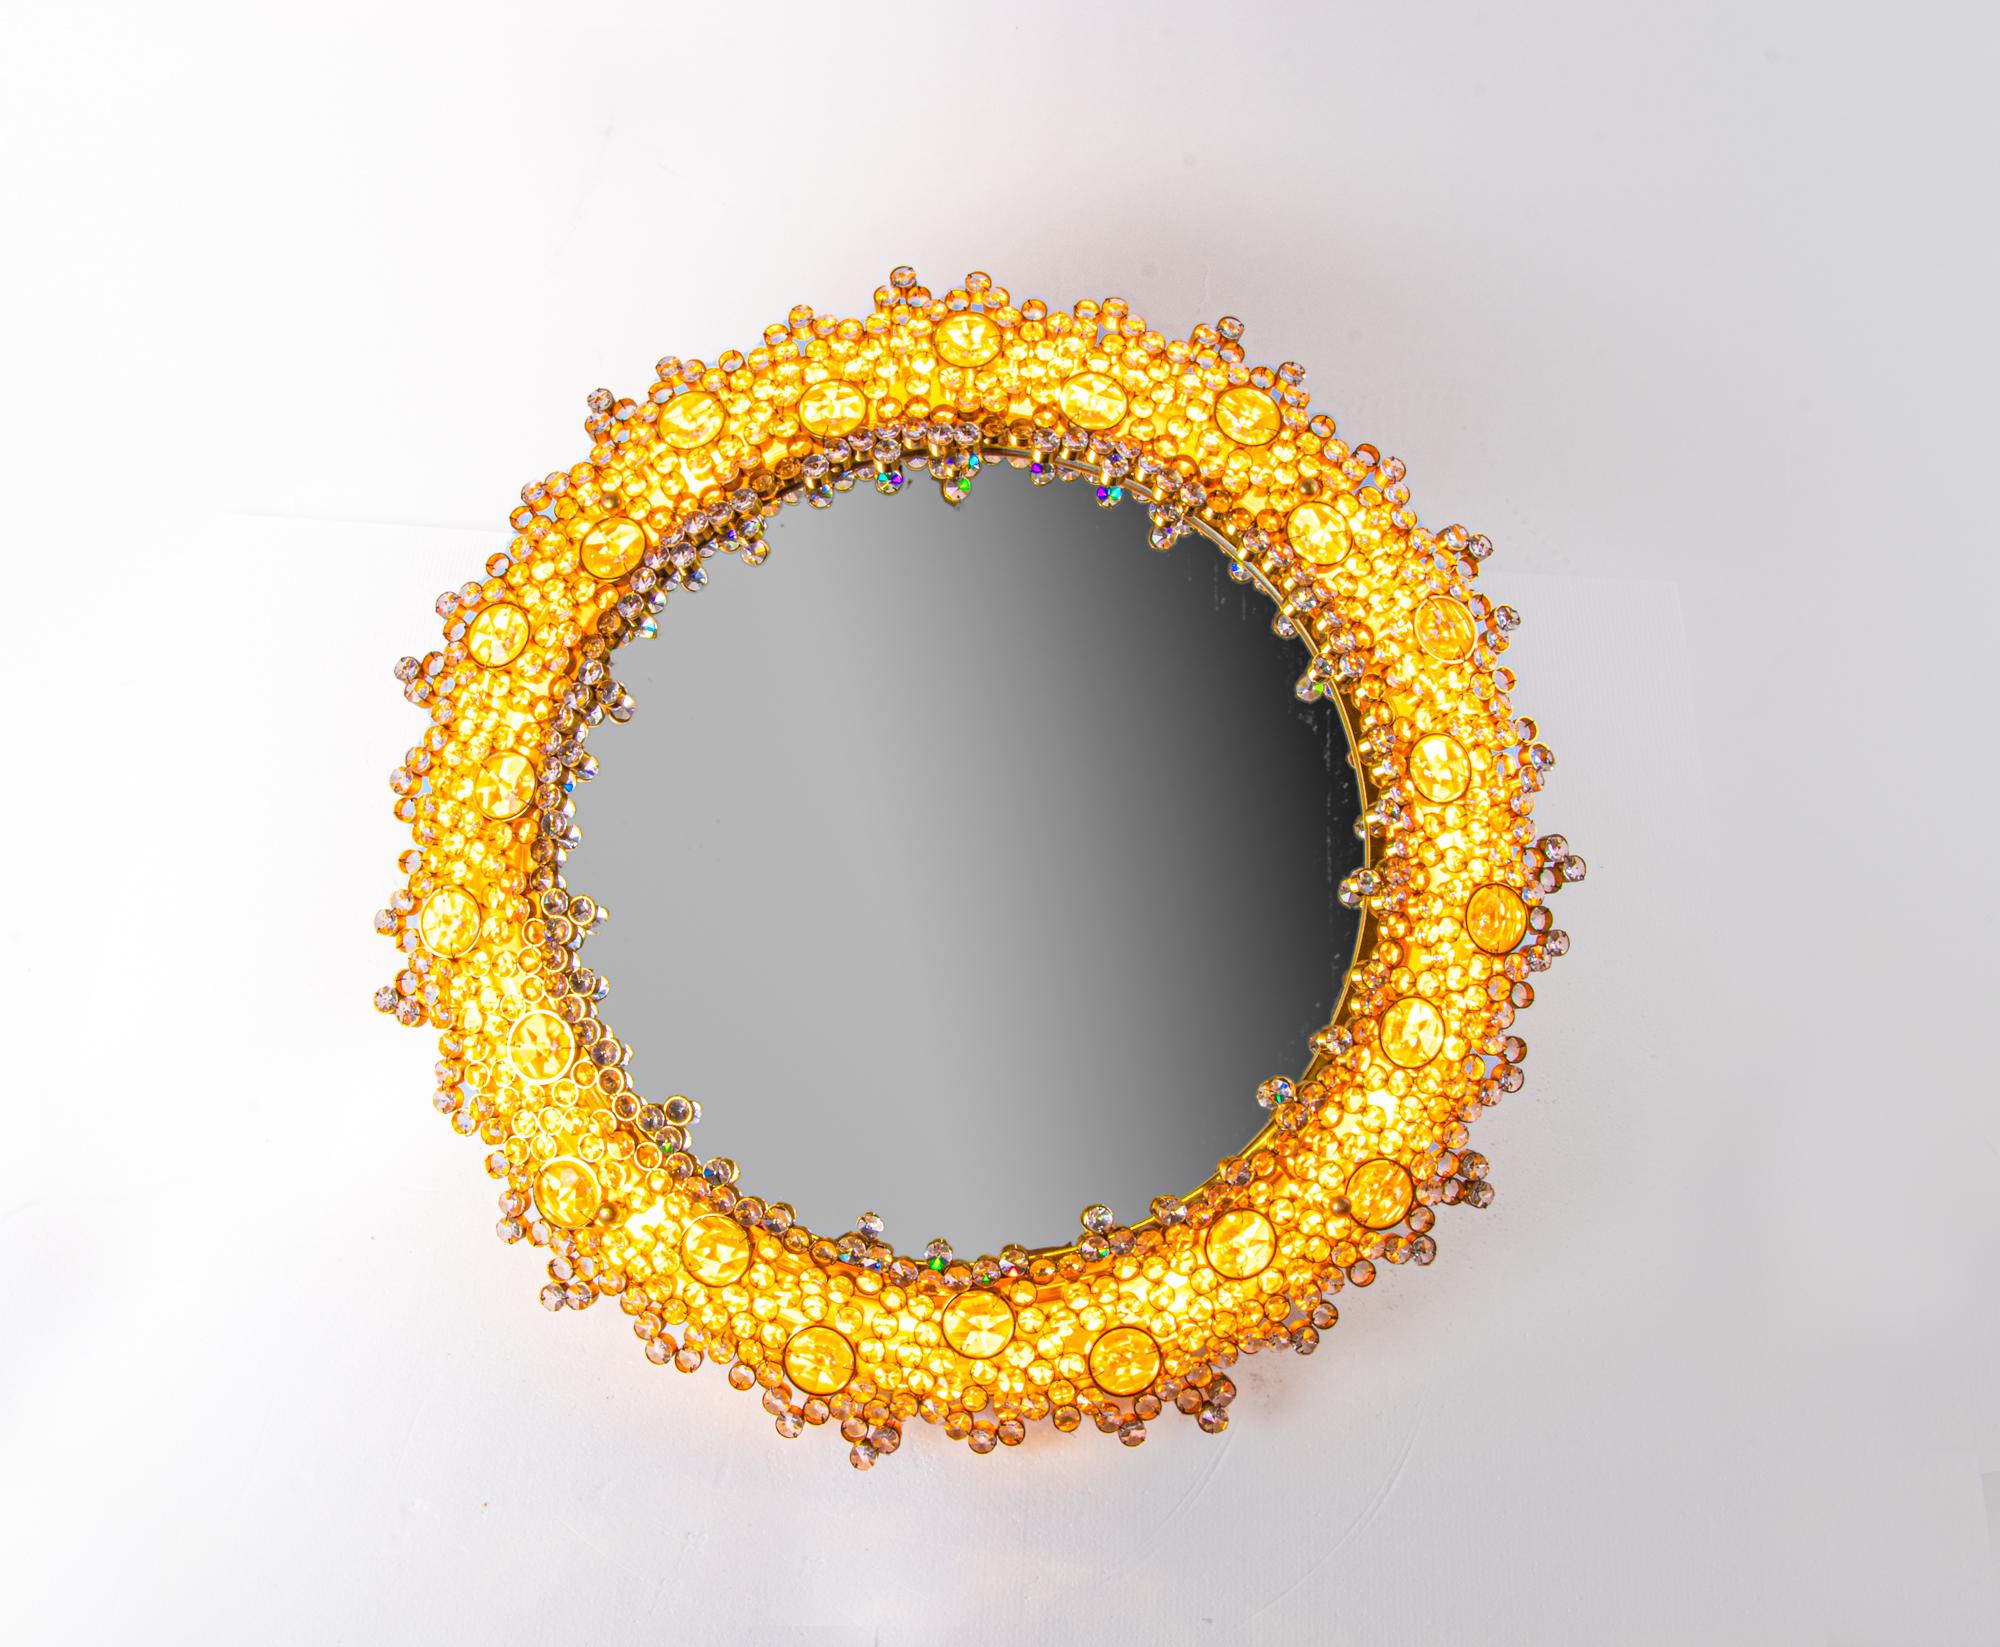 Élégant miroir rétroéclairé rond avec des cristaux autrichiens Swarovski facettés sur un cadre en laiton doré. Conçu par Christoph Palme. Dispose de 10 prises. En très bon état. Il s'agit de l'un de ces designs fantastiques qui s'adaptent à toutes